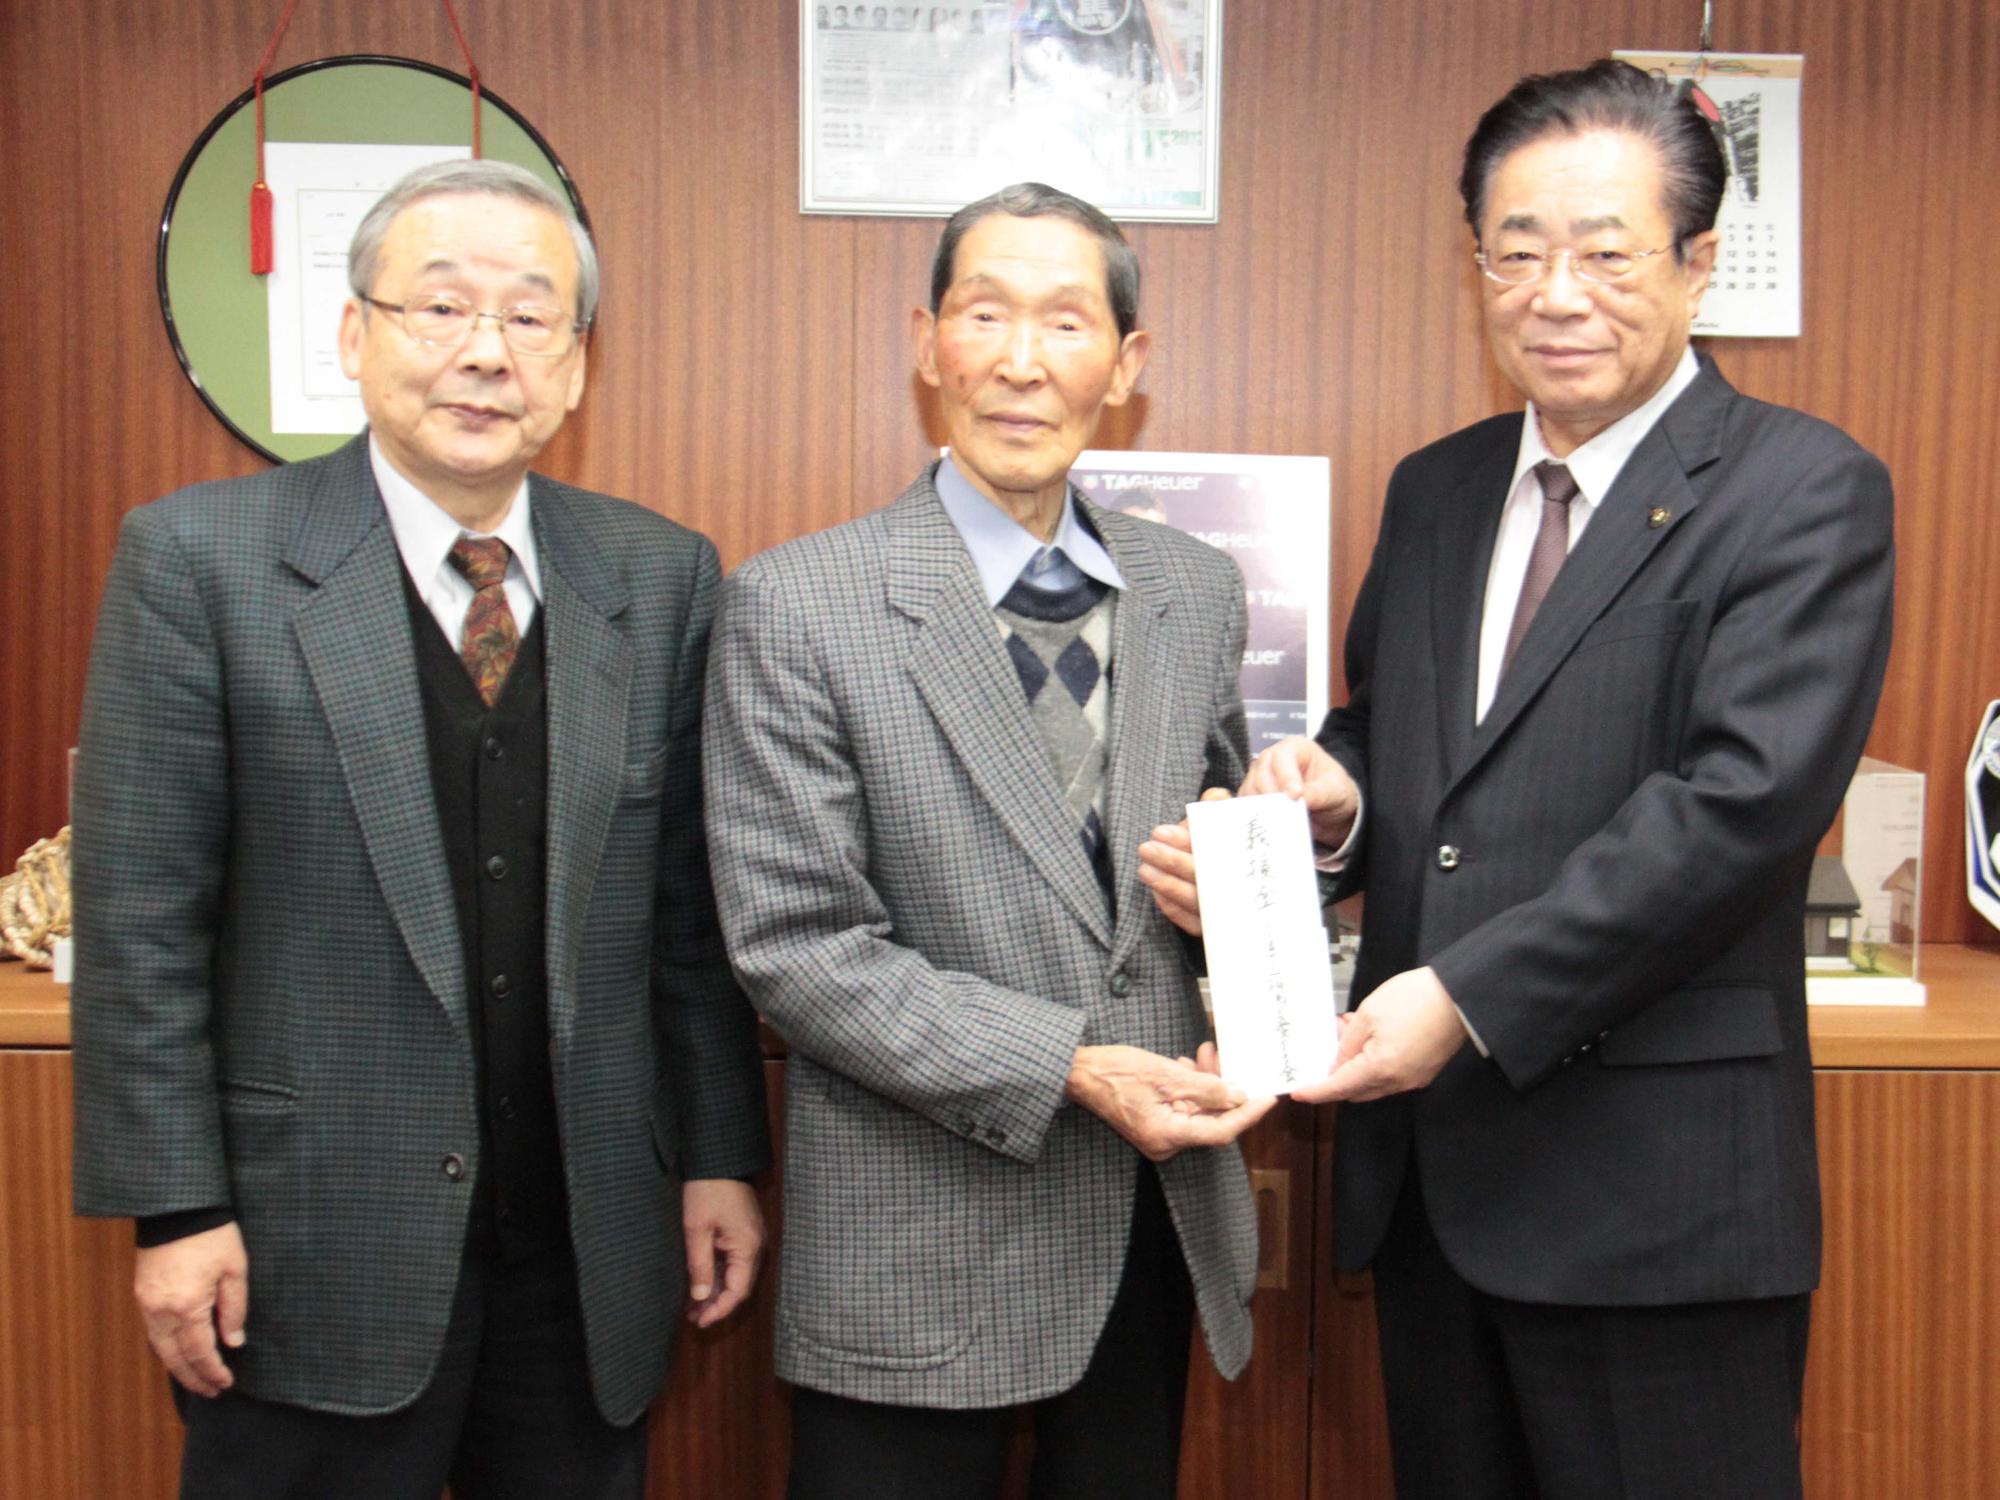 渡辺満州会長と鈴木博副会長が義援金を立谷市長に手渡す様子